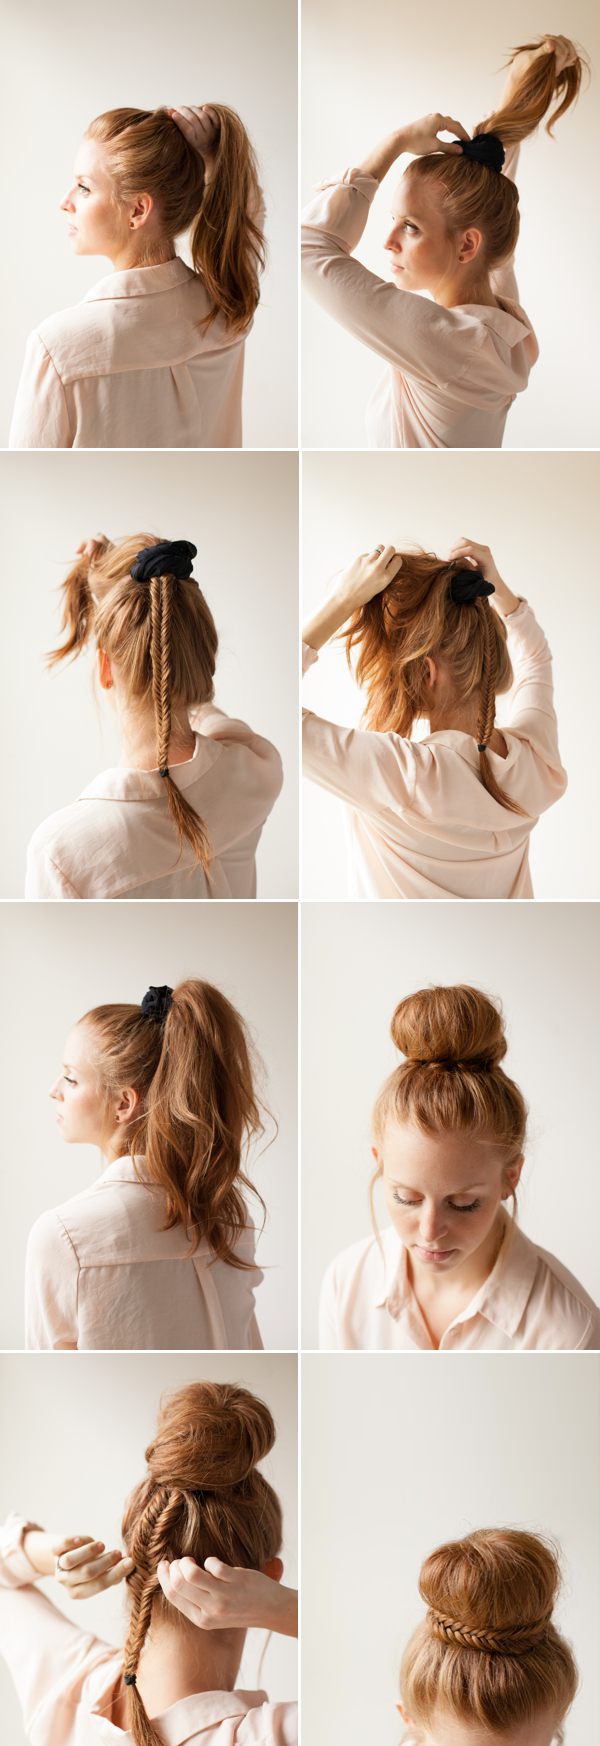 hairstyle tutorials (3)